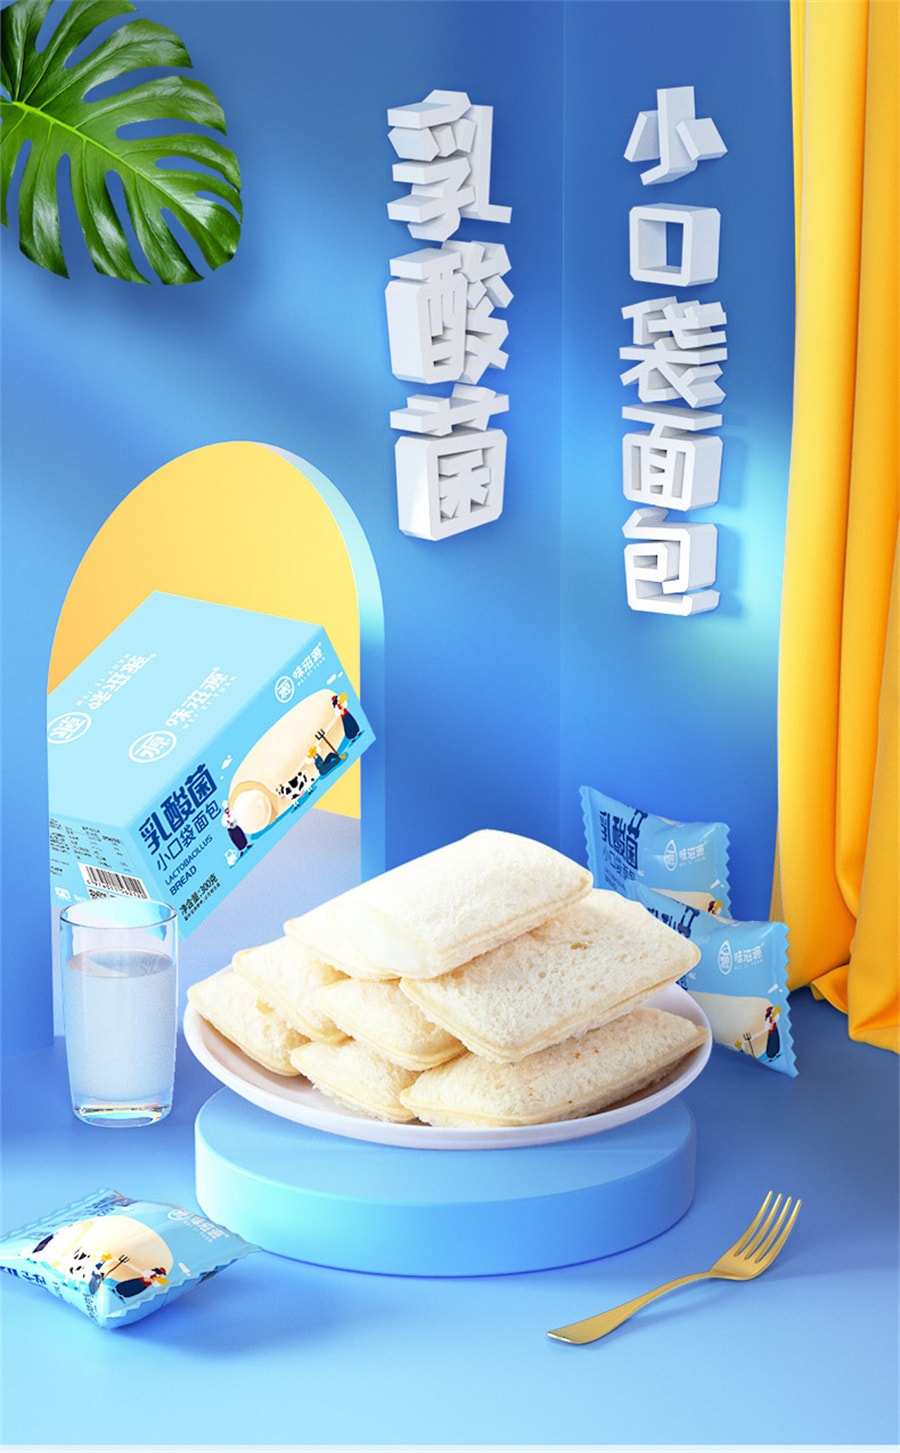 【中國直郵】口味滋源 乳酸菌口袋小麵包整箱早餐營養優格蛋糕網紅點心 300g/盒